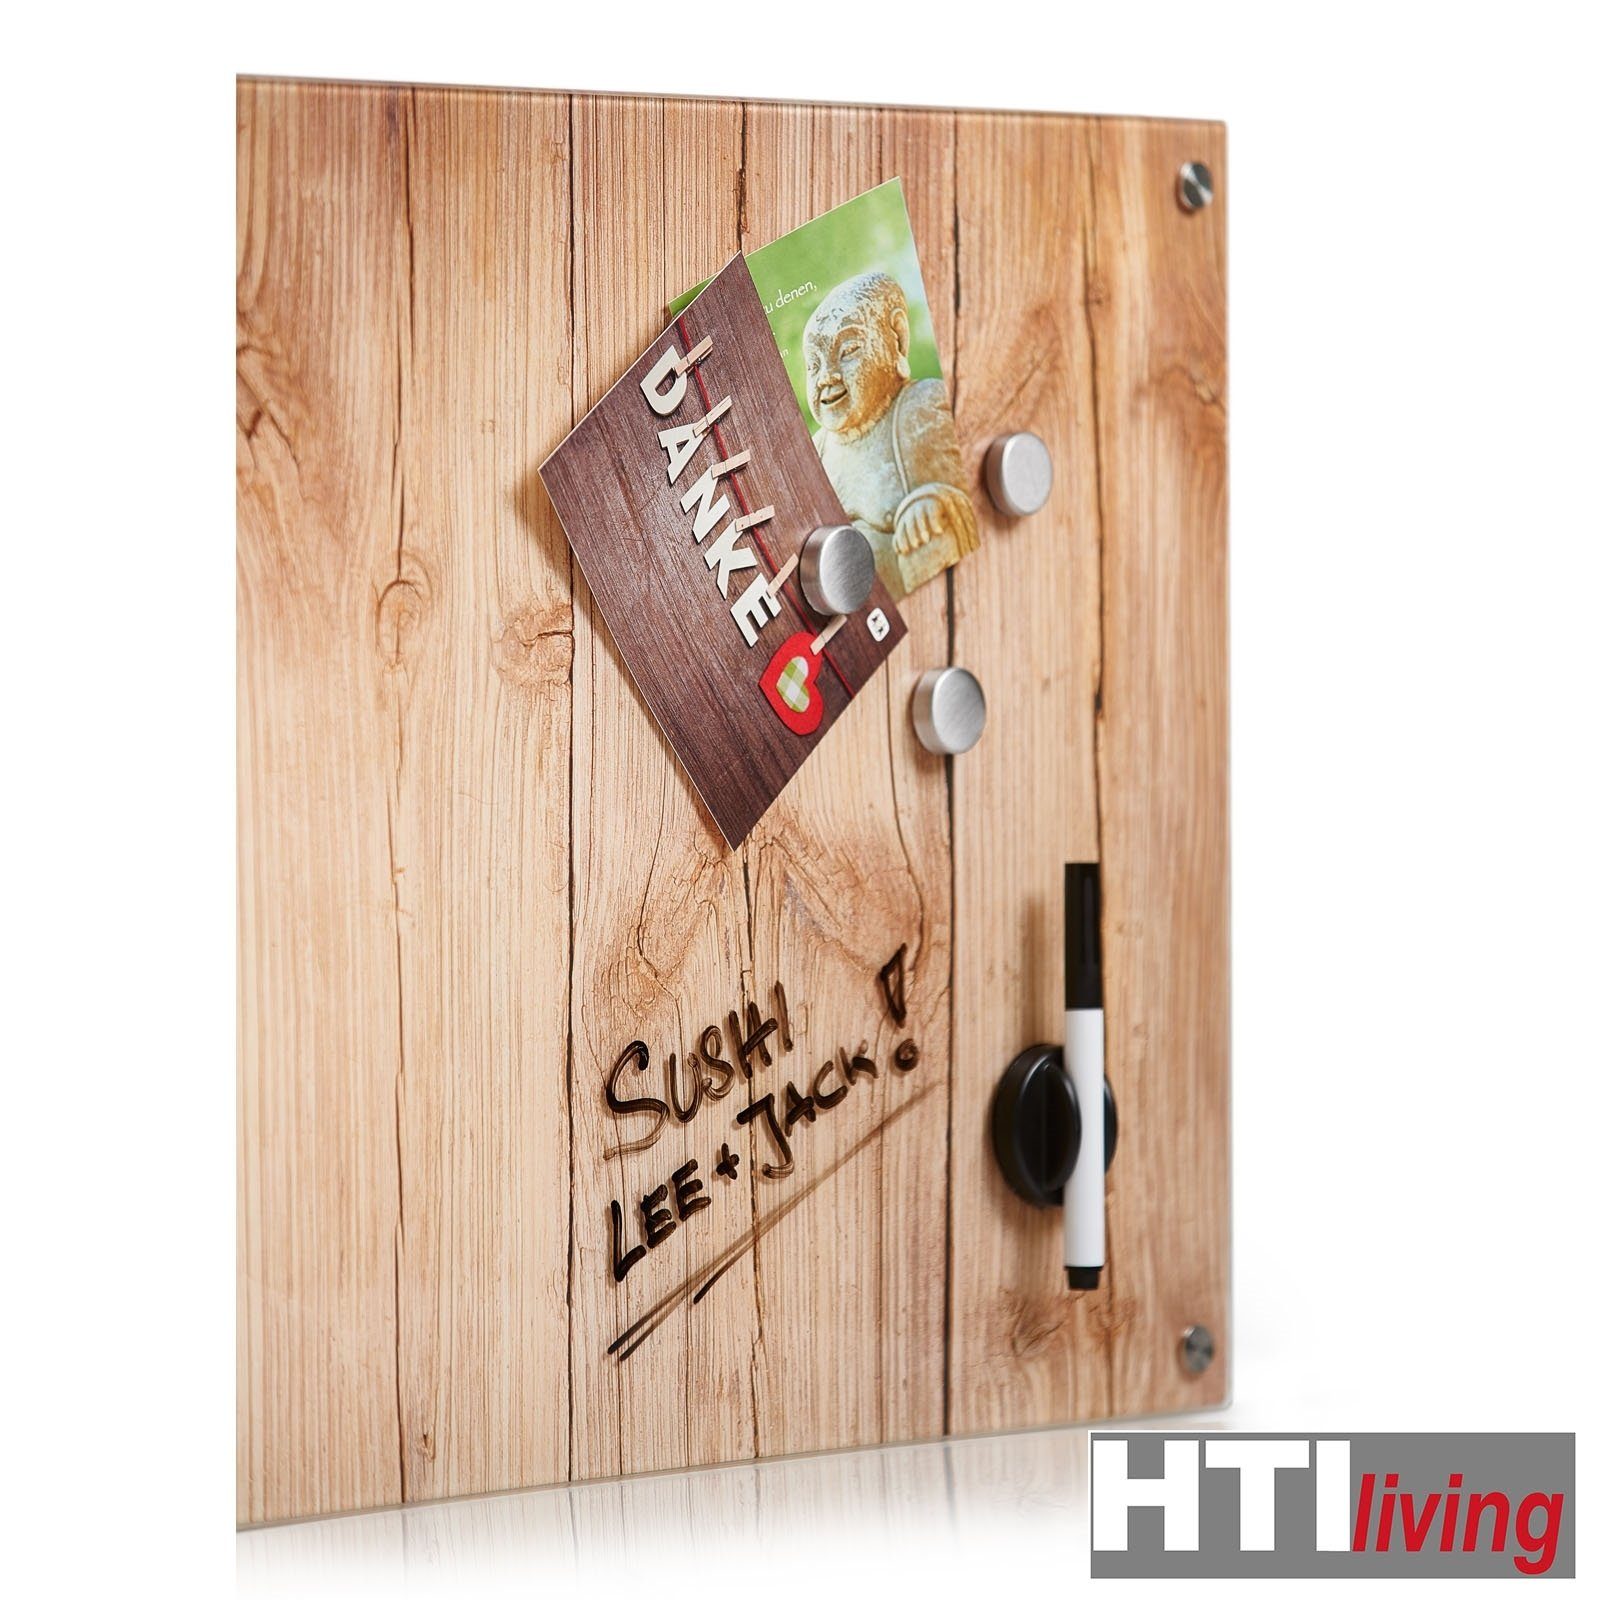 Magnettafel HTI-Living Memoboard Wood, Schreibboard Glas Memoboard Schreibtafel Magnetboard Pinnwand